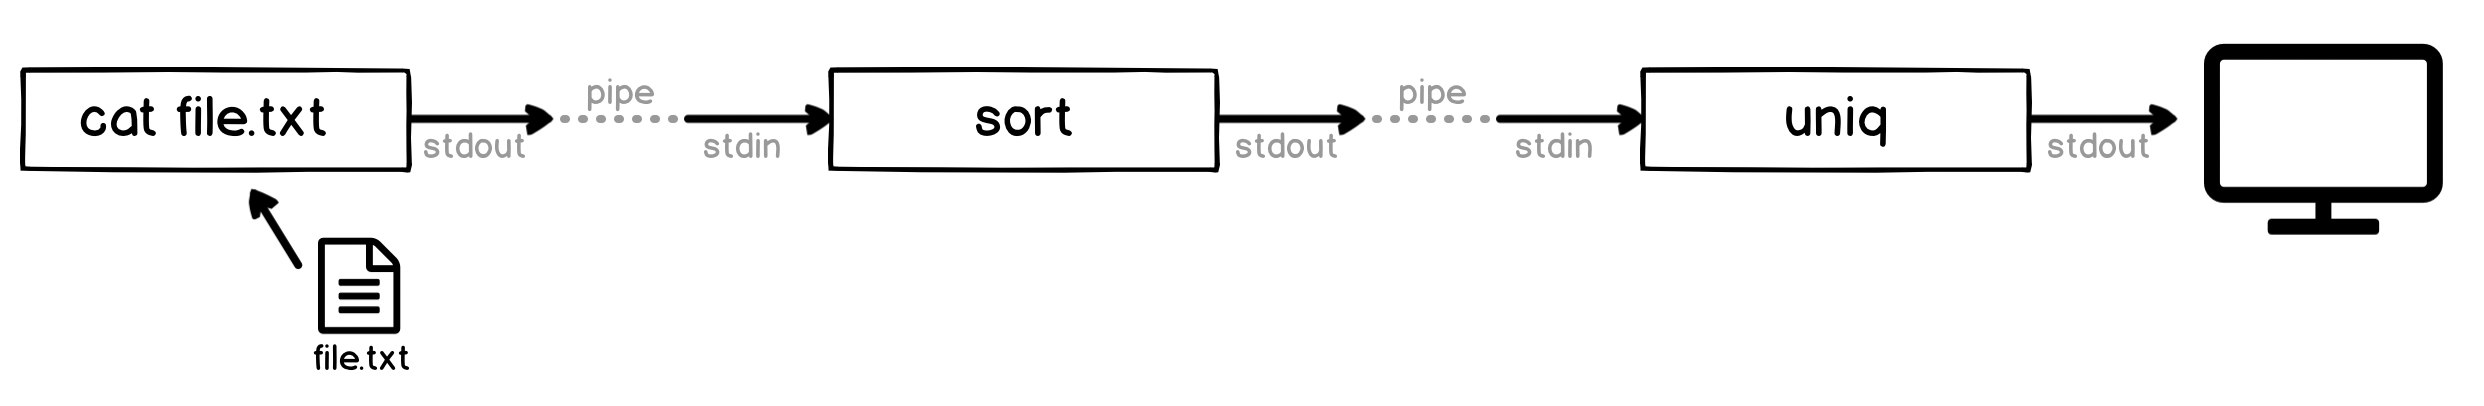 Diagram: cat-sort-uniq pipeline